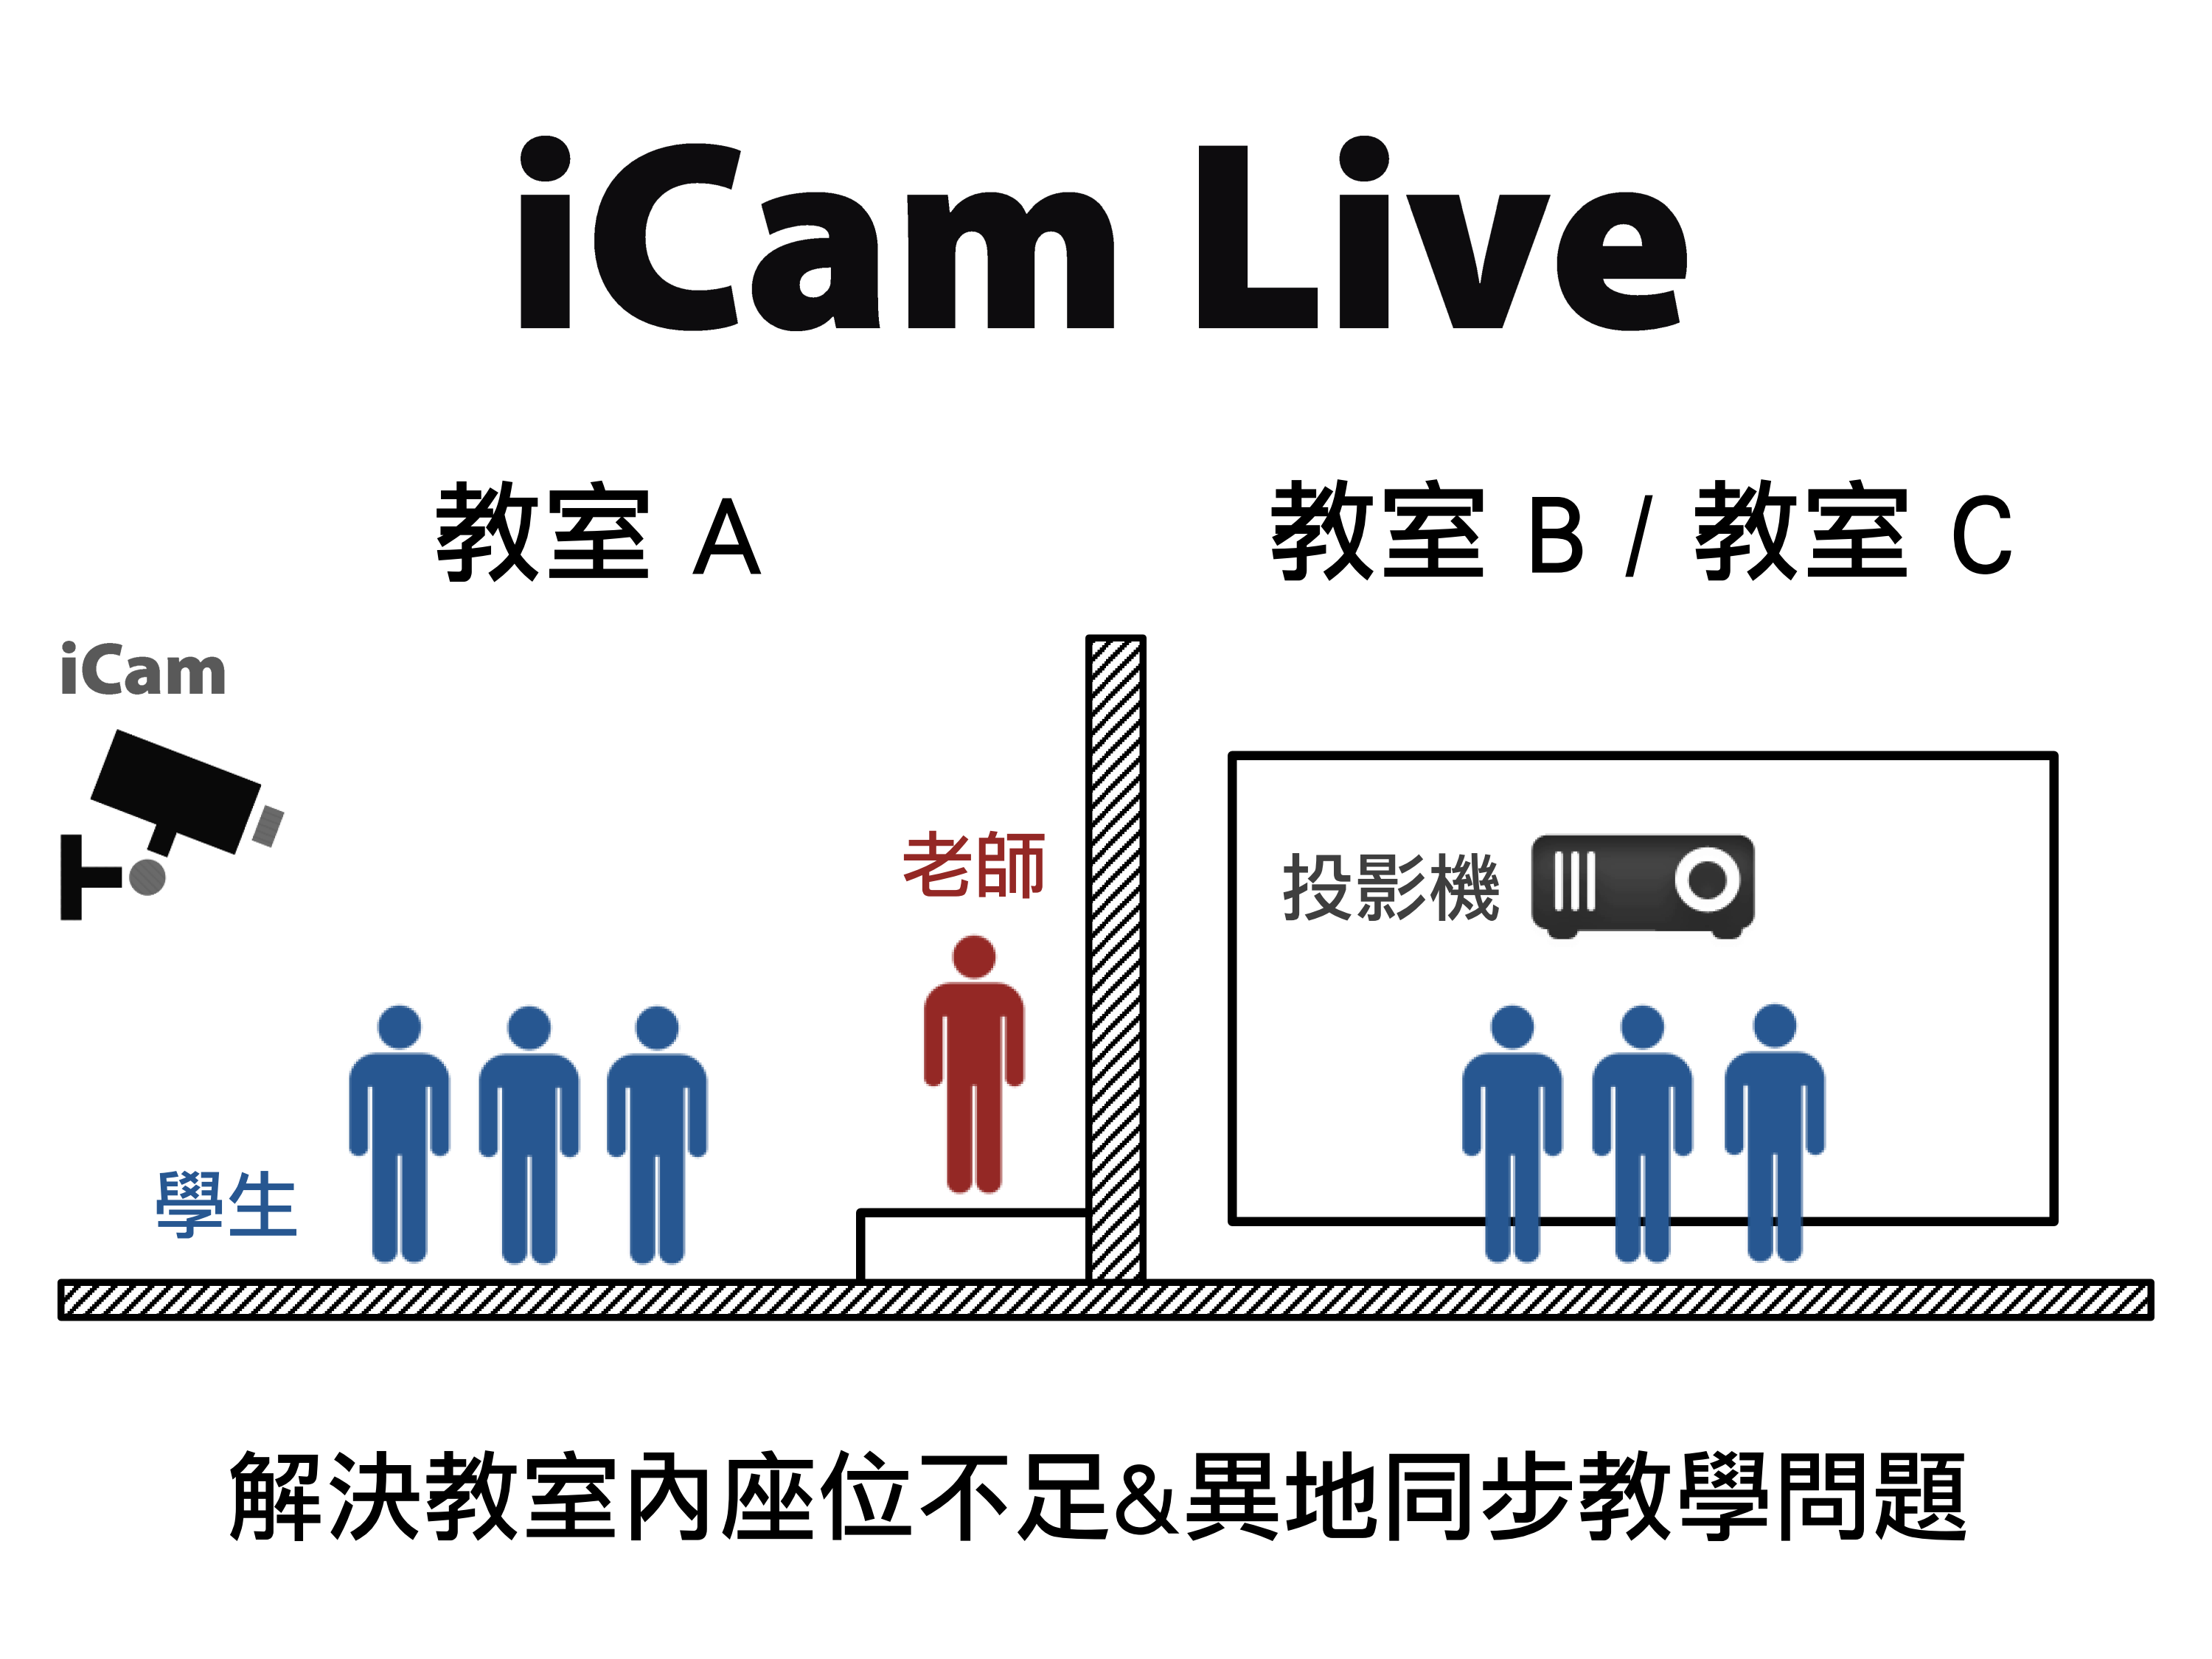 蓝眼科技提供免费的iCam® Live现场直播软件给教育单位